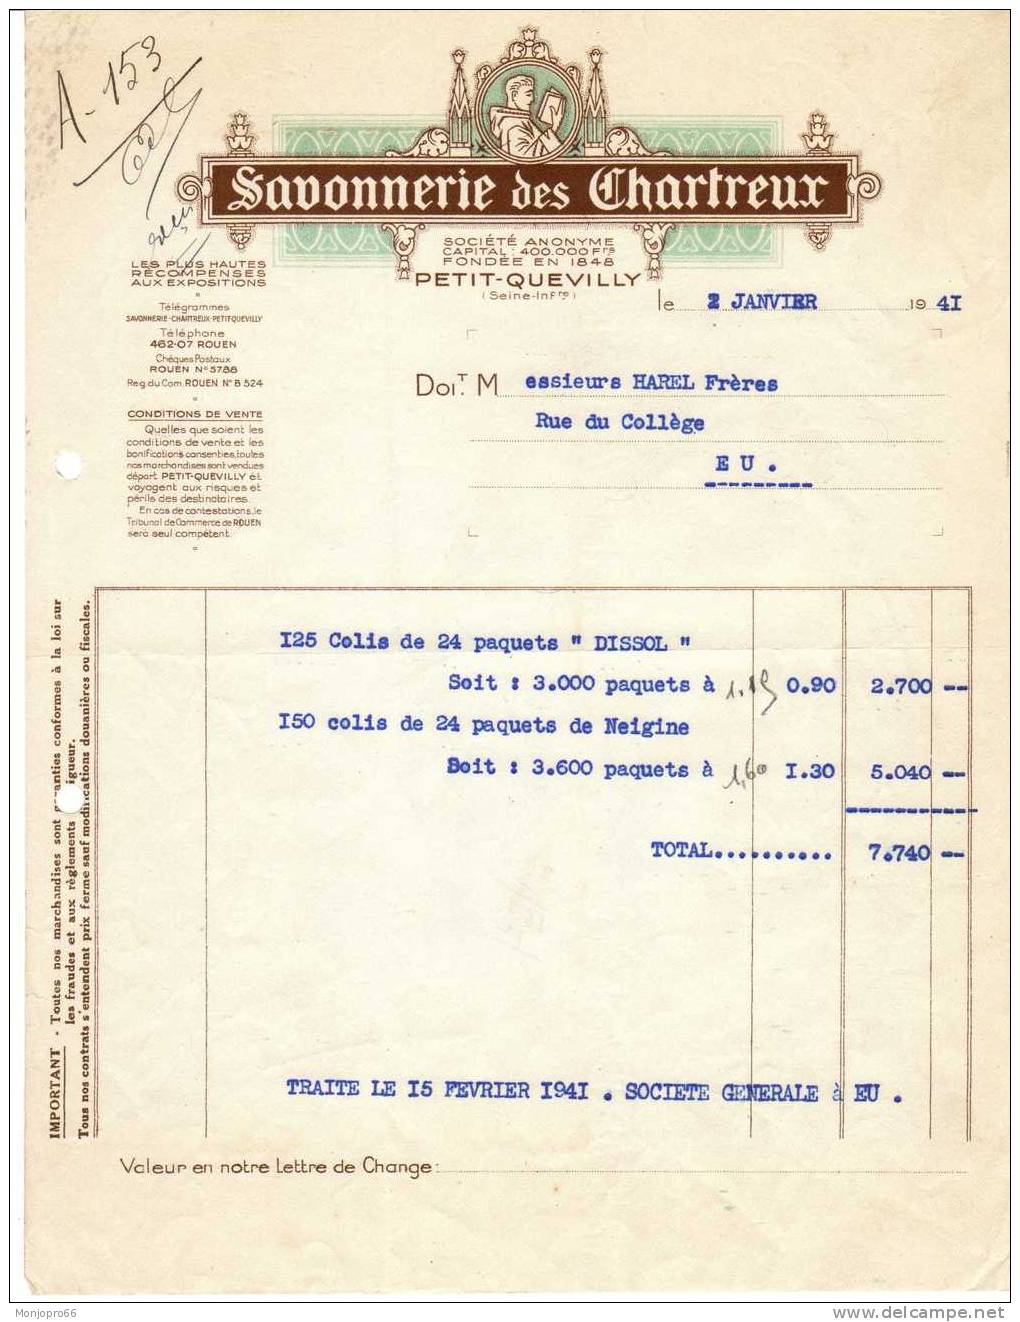 Facture De La Savonnerie Des Chartreux De Petit Quevilly Et De 1941 - Perfumería & Droguería